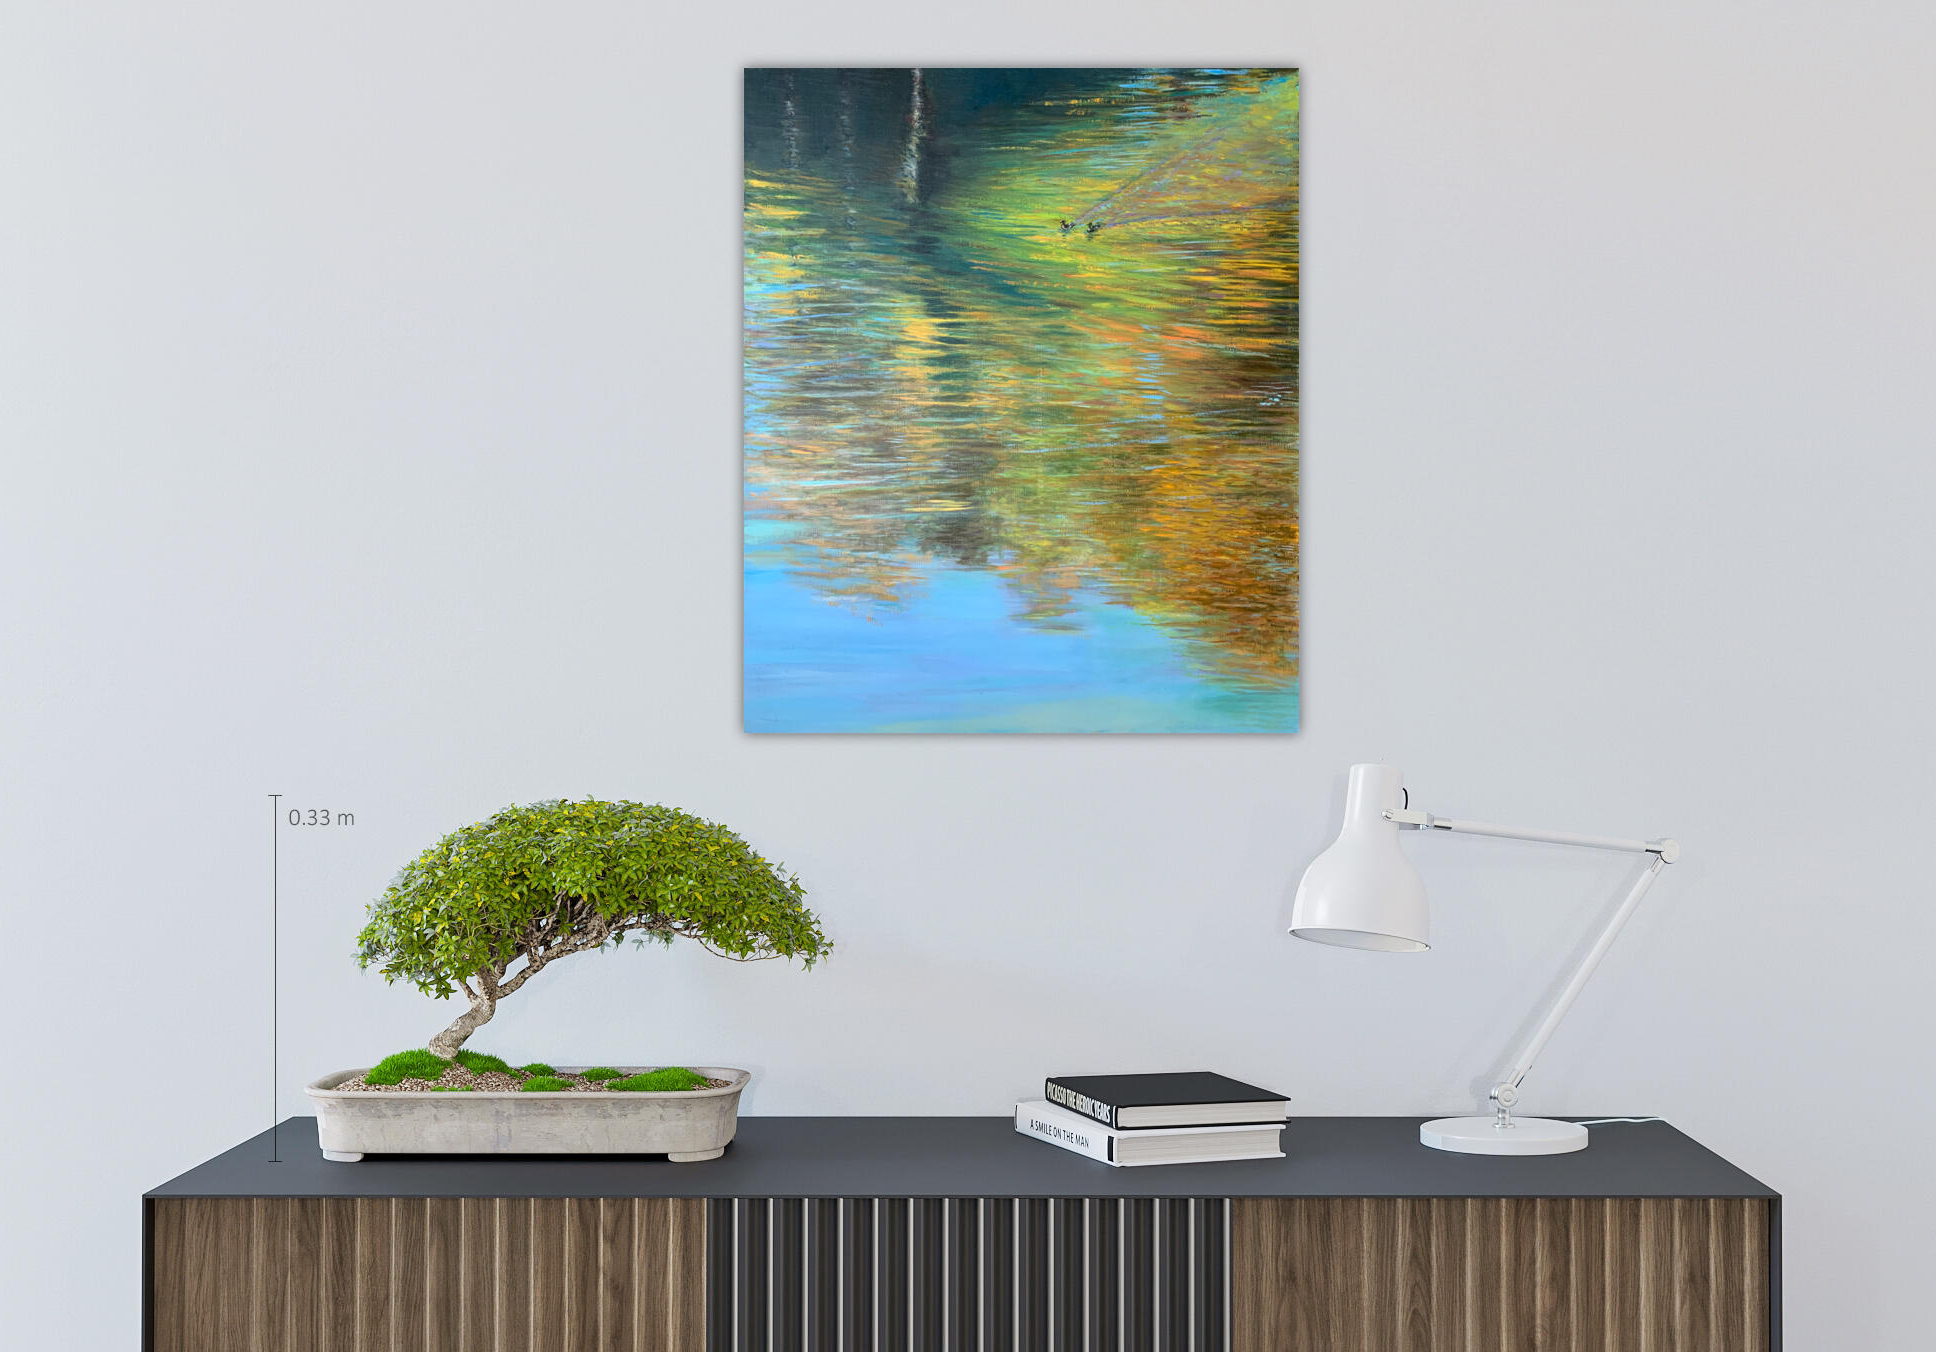 осень отражение река Химка Покровское Стрешнево парк пейзаж картина художник Альберт Сафиуллин